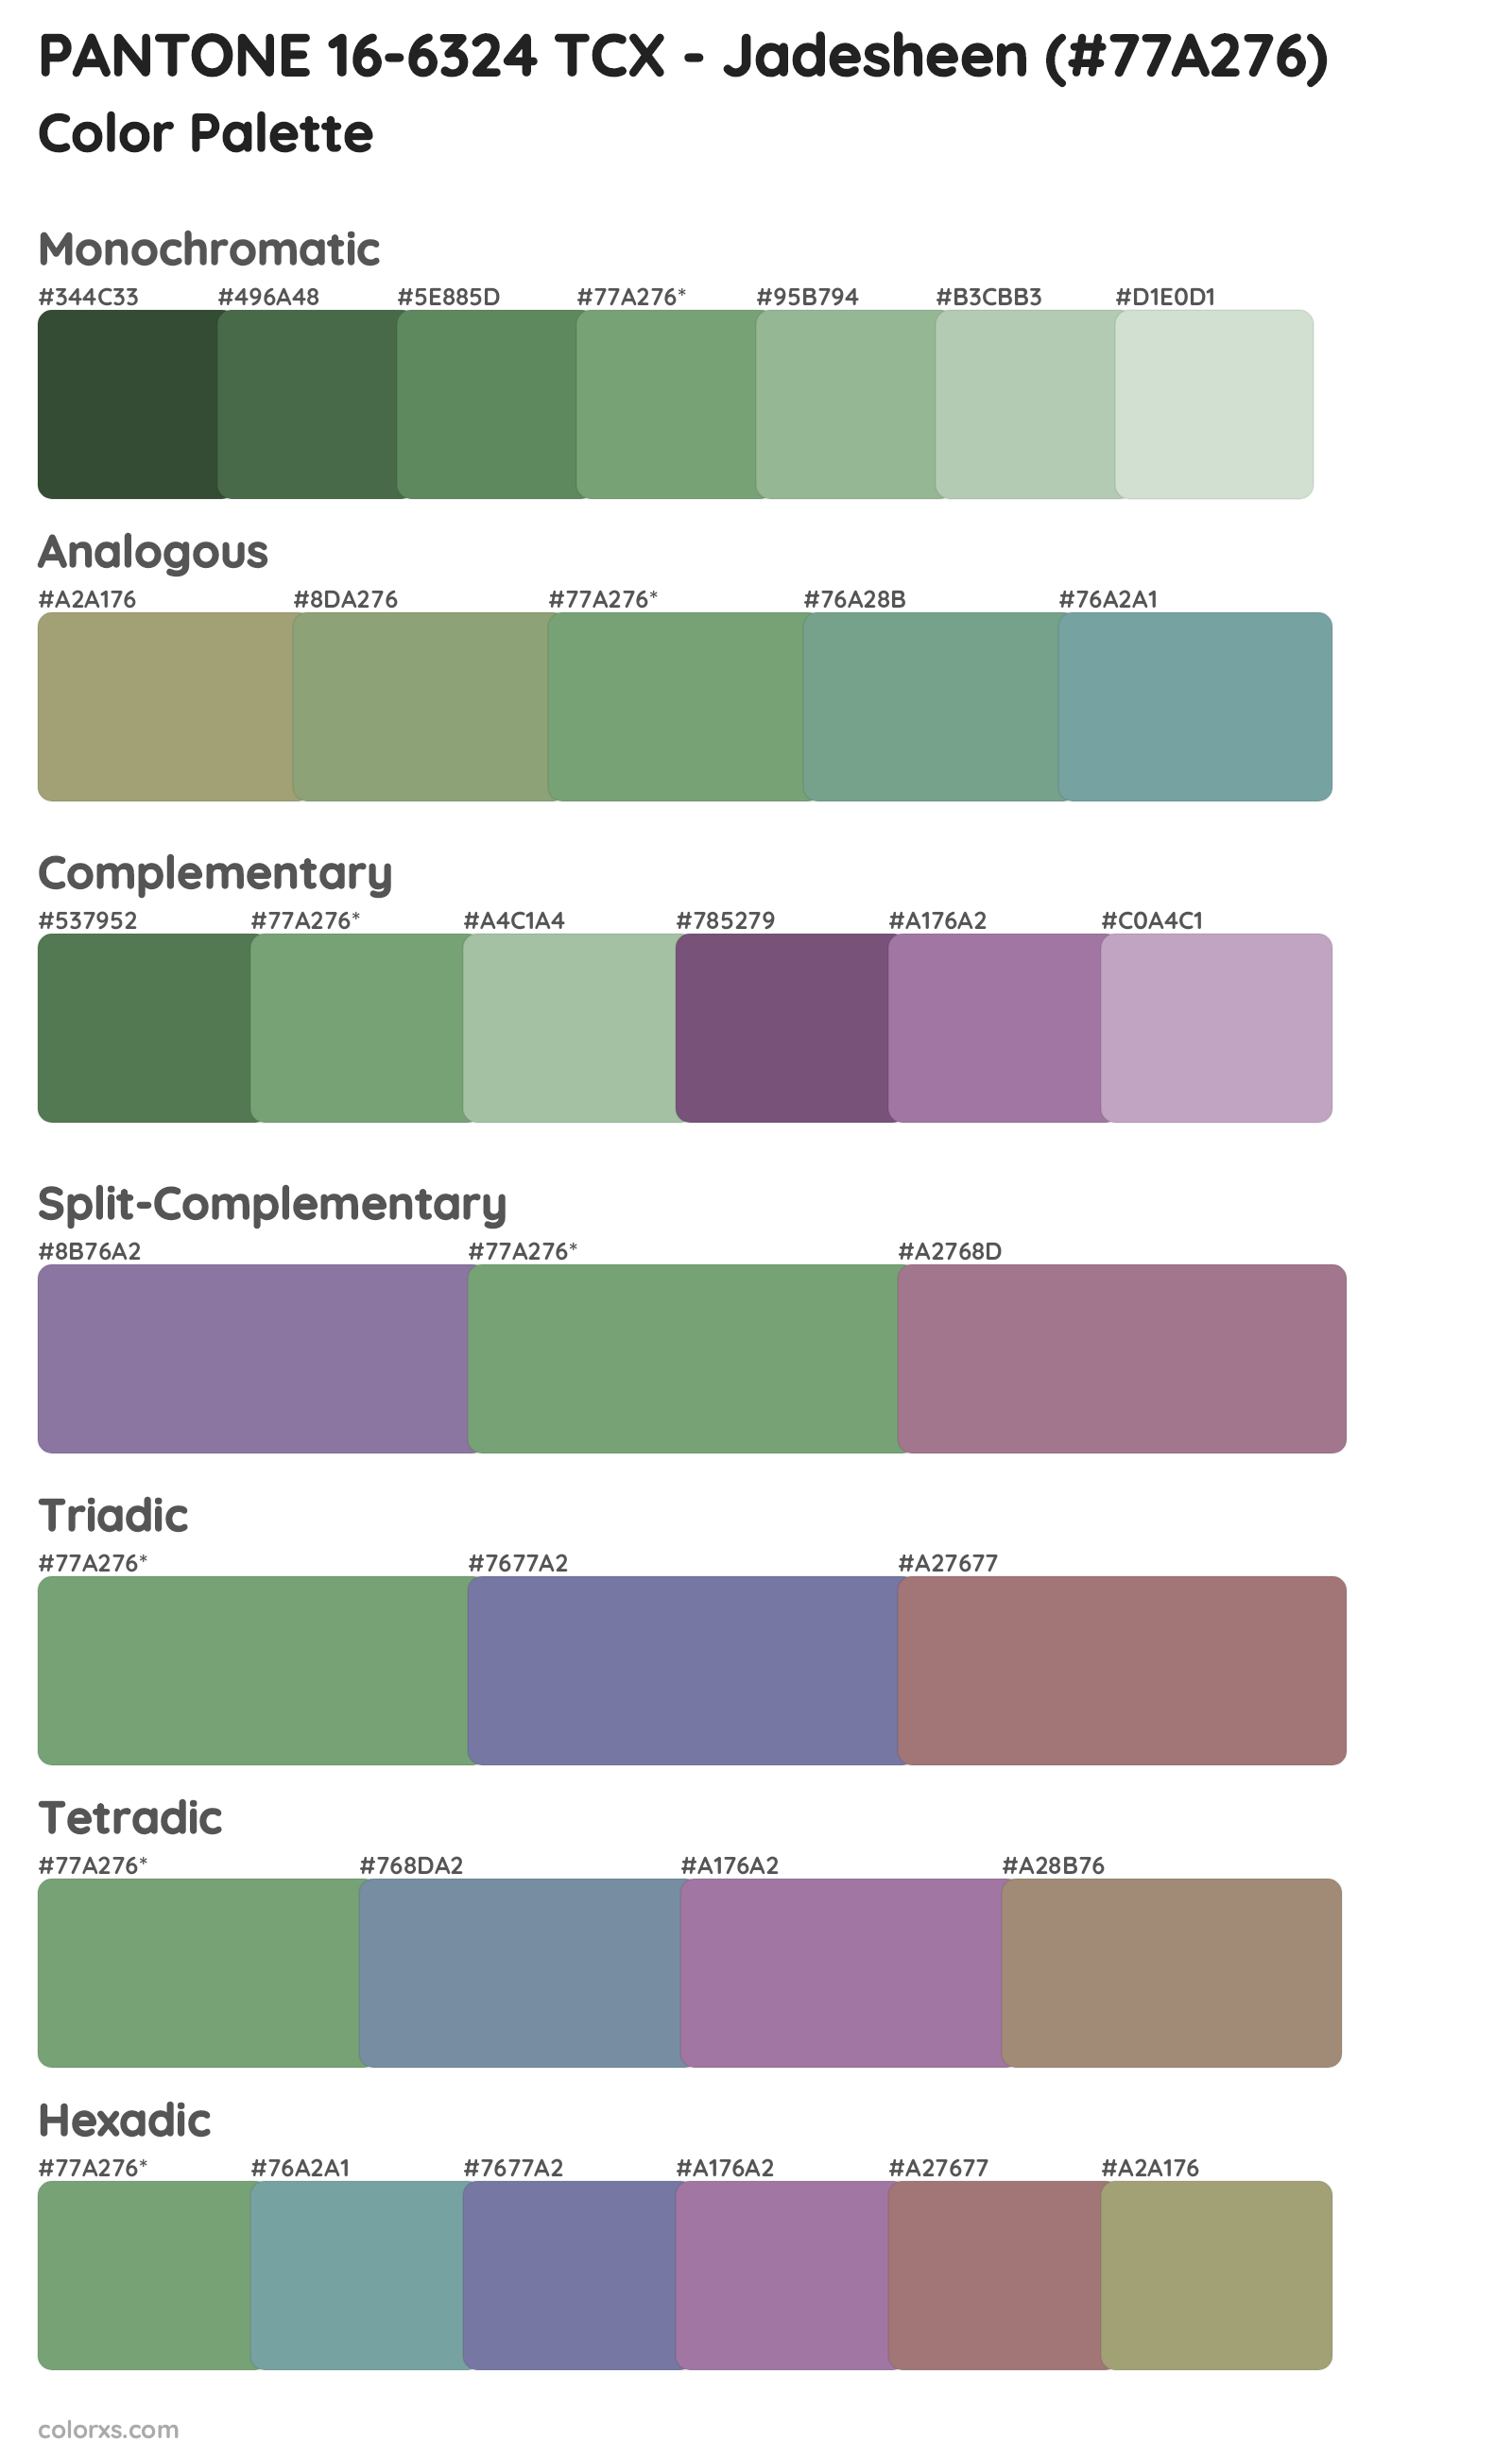 PANTONE 16-6324 TCX - Jadesheen Color Scheme Palettes